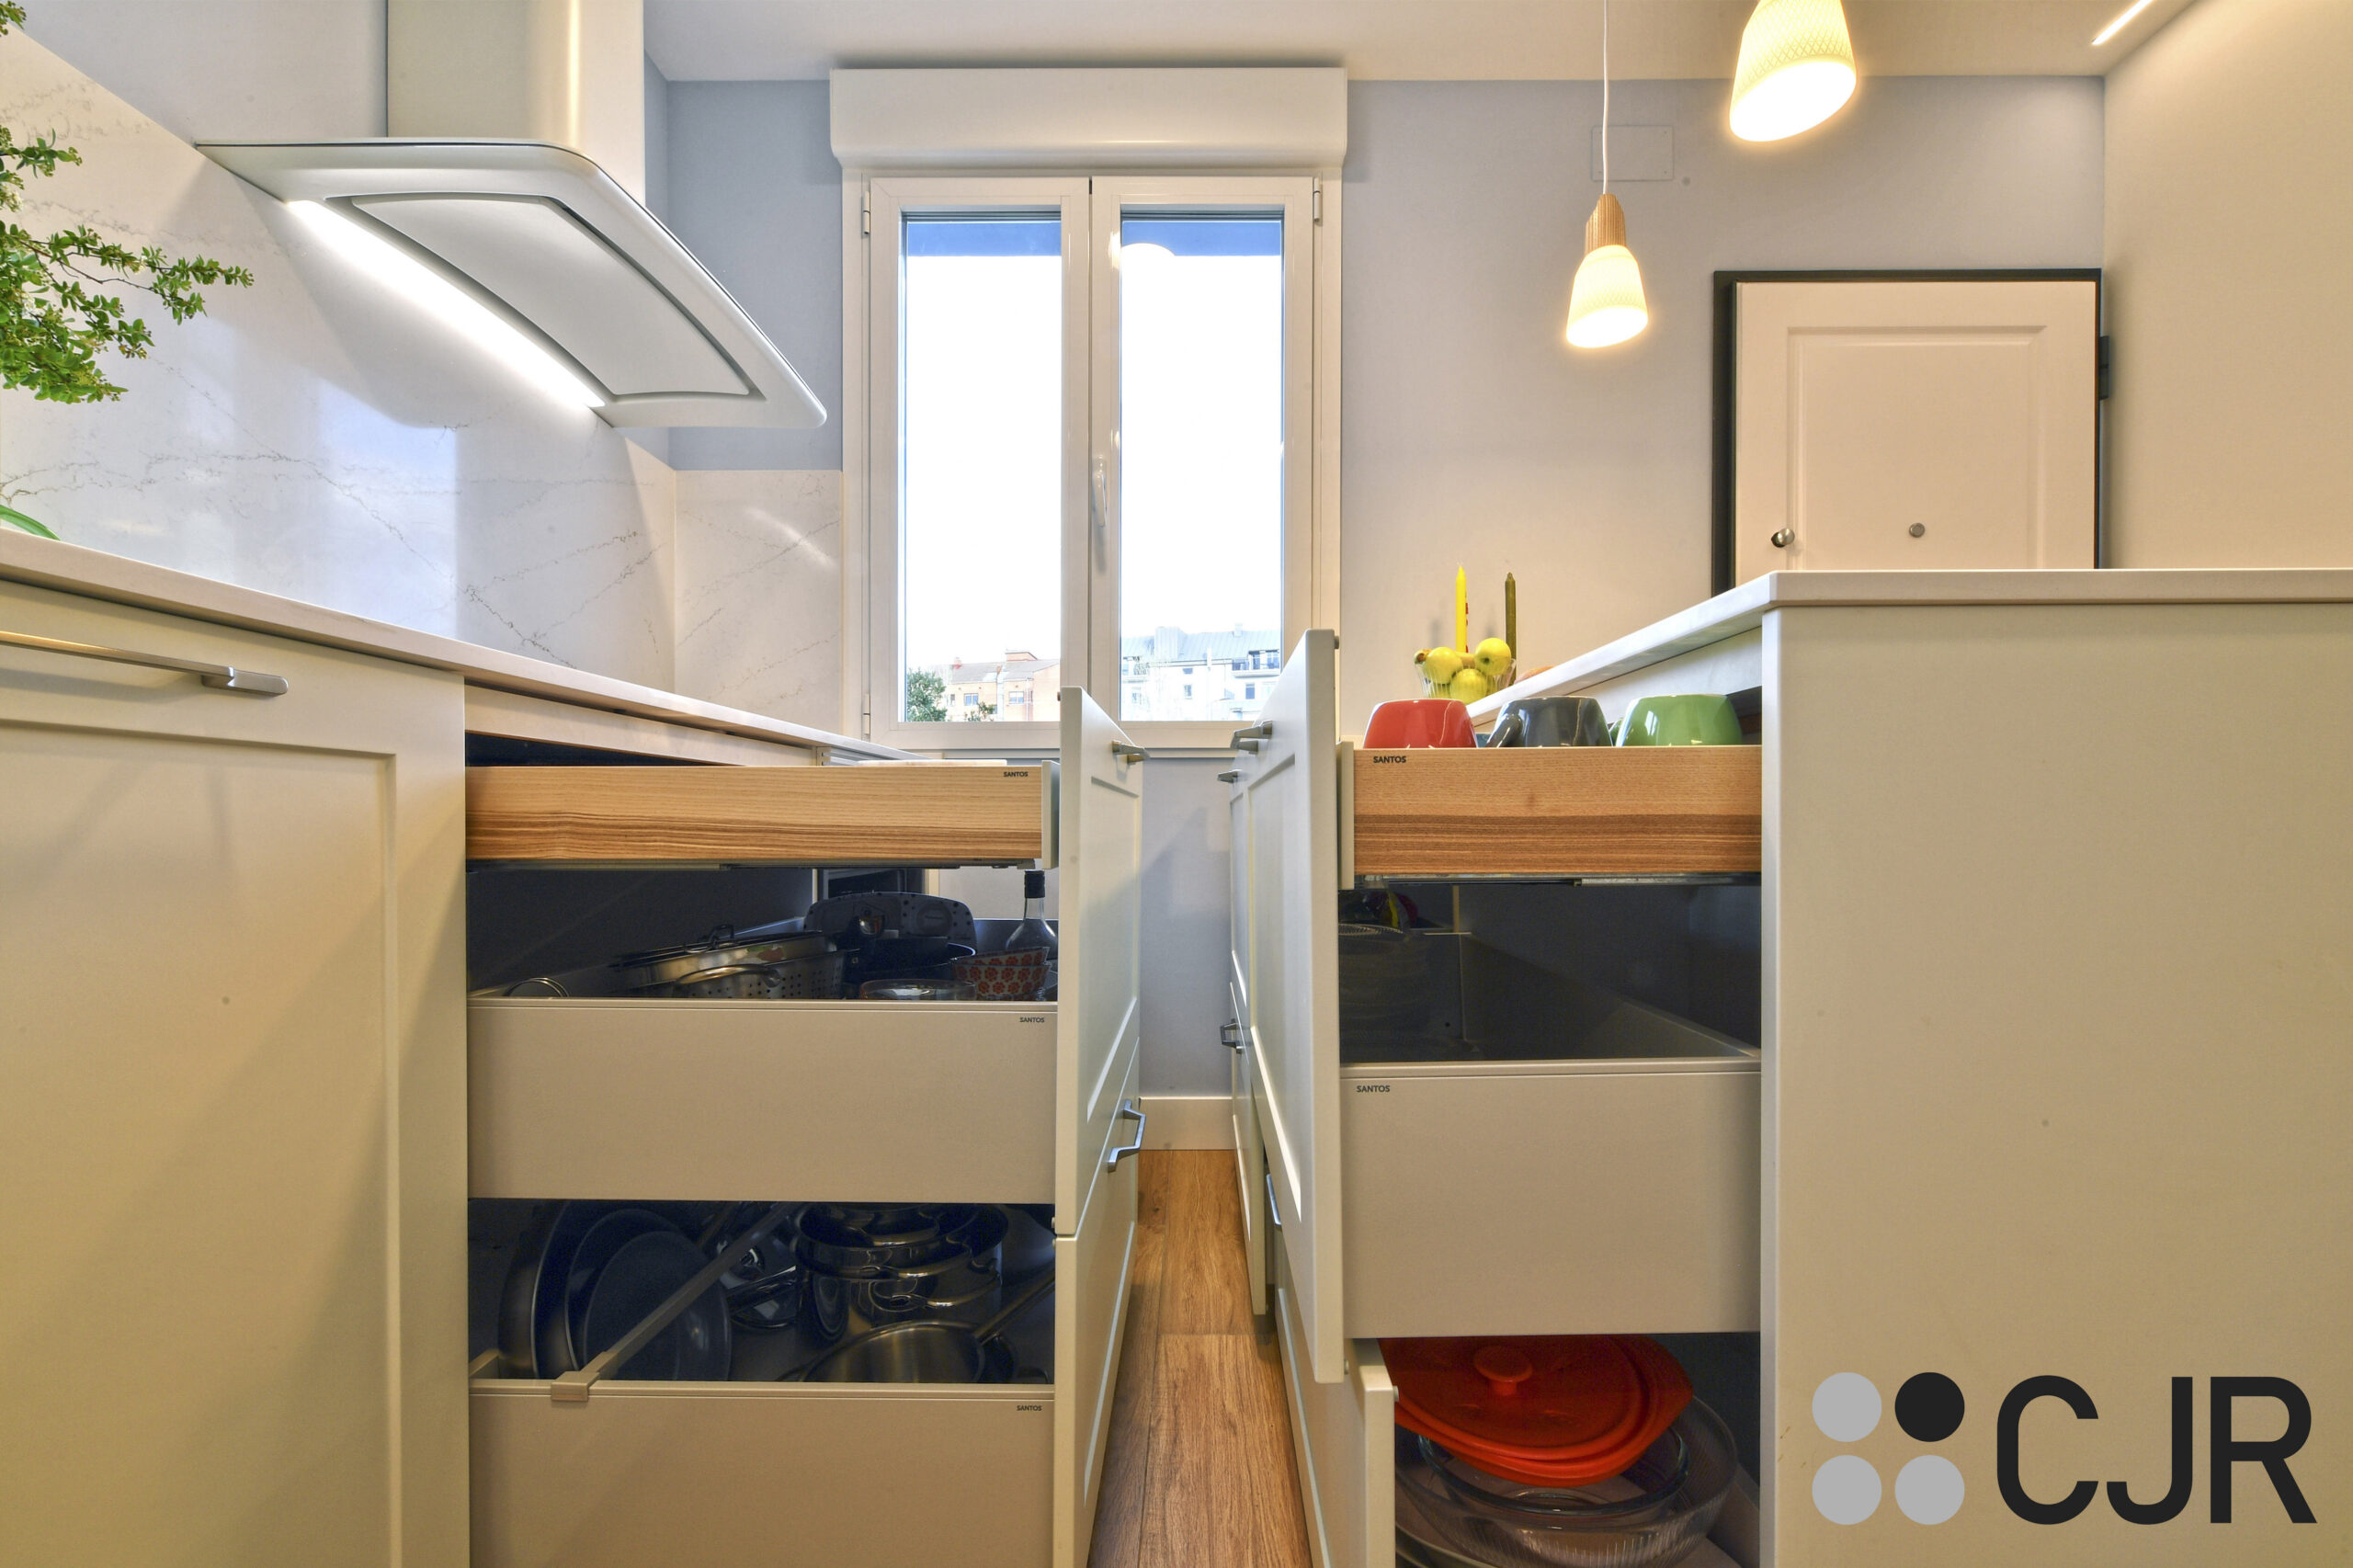 muebles bajos de cocina blanca con interior en madera cocinas cjr